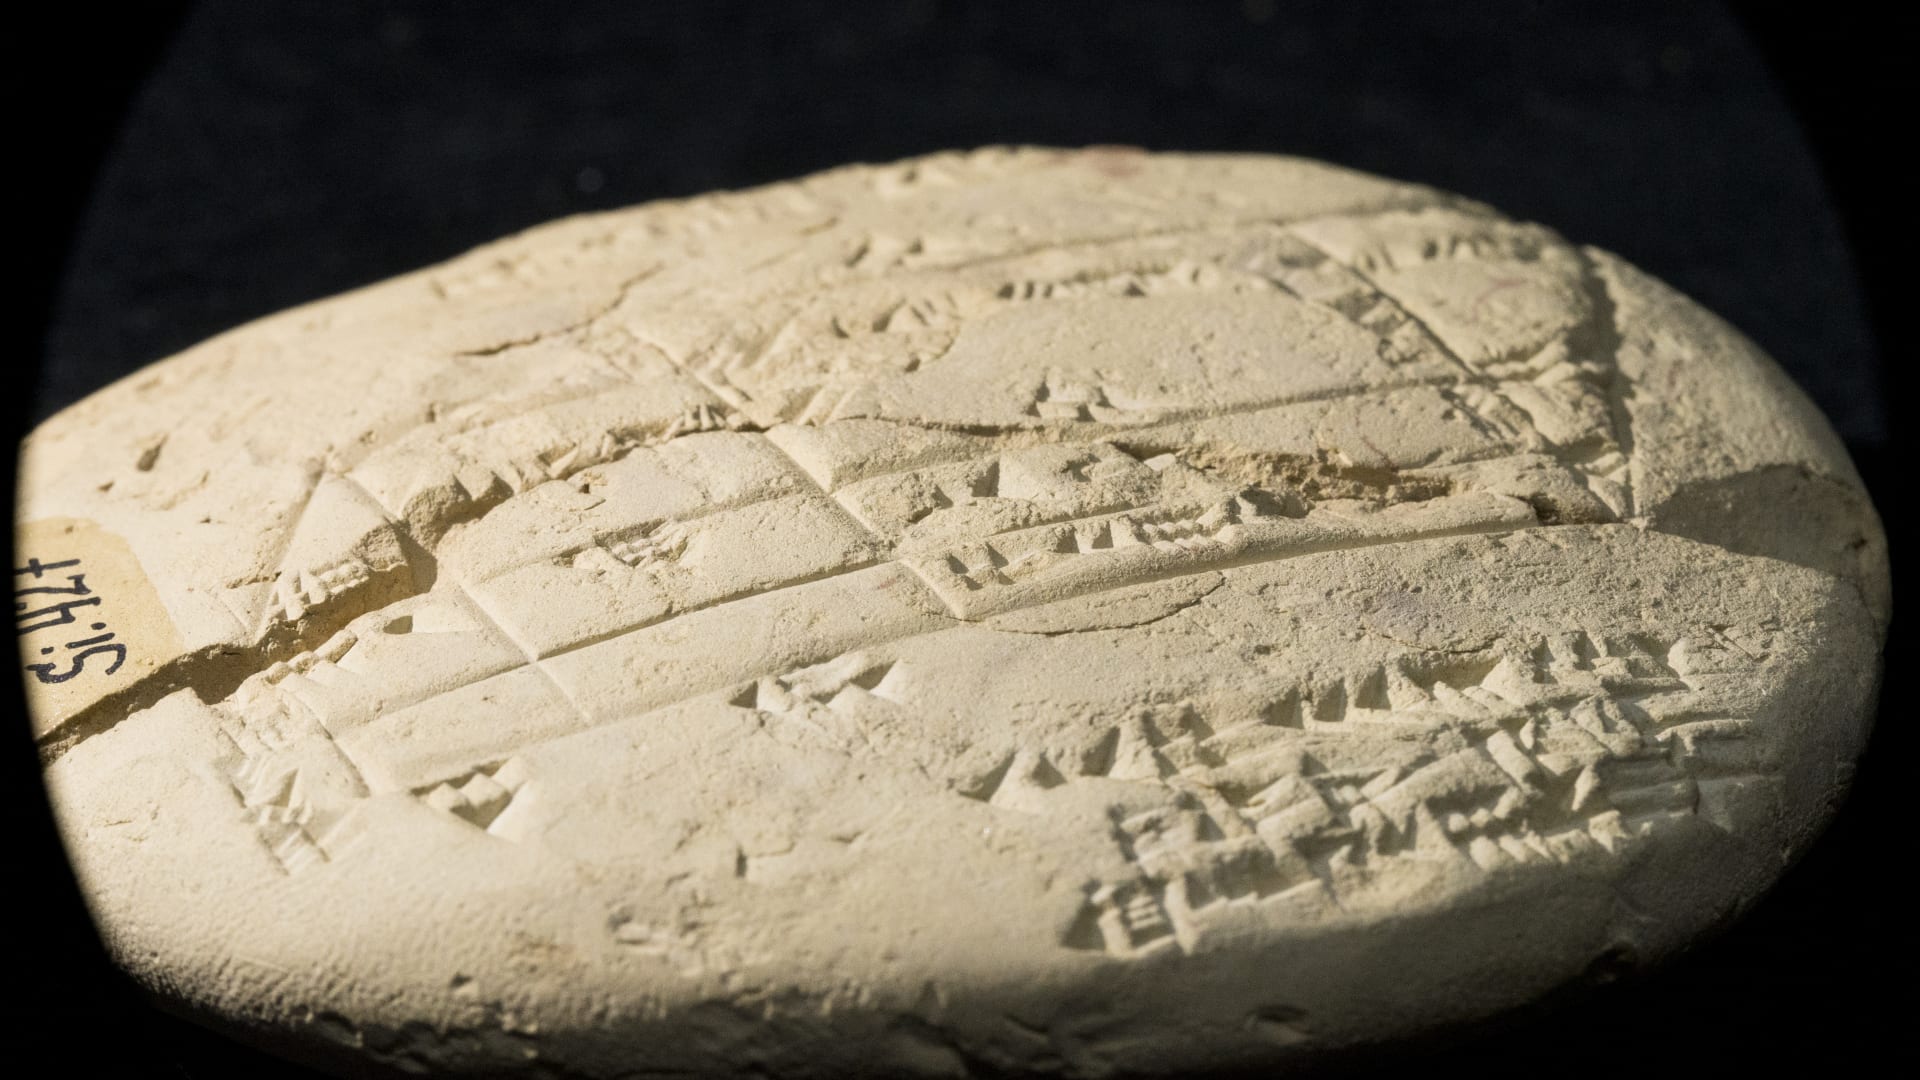 عُثر عليه بالعراق.. الكشف عن أقدم مثال للهندسة التطبيقية بلوح طيني من العصر البابلي